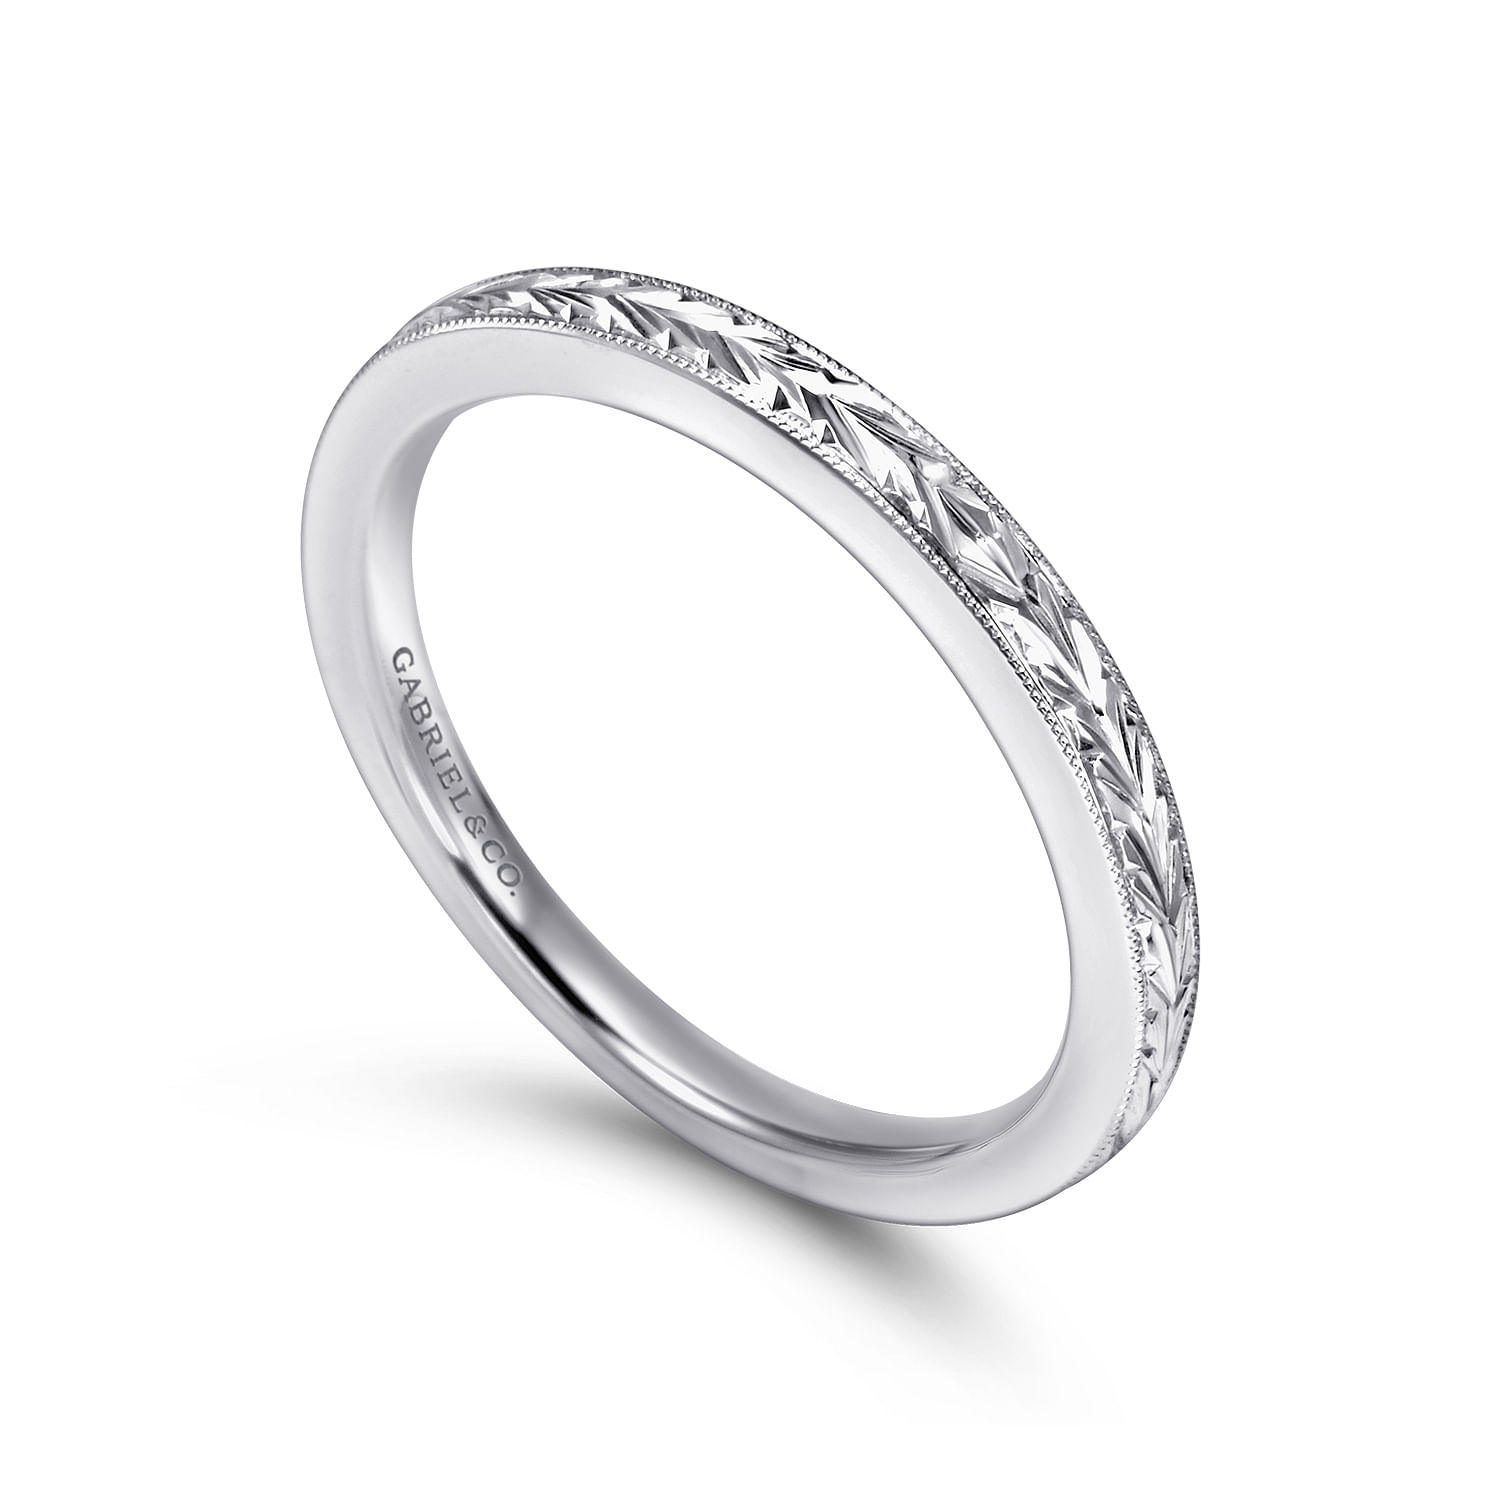 Princess Cut Engagement Rings - Princess Cut Diamond Rings - Gabriel